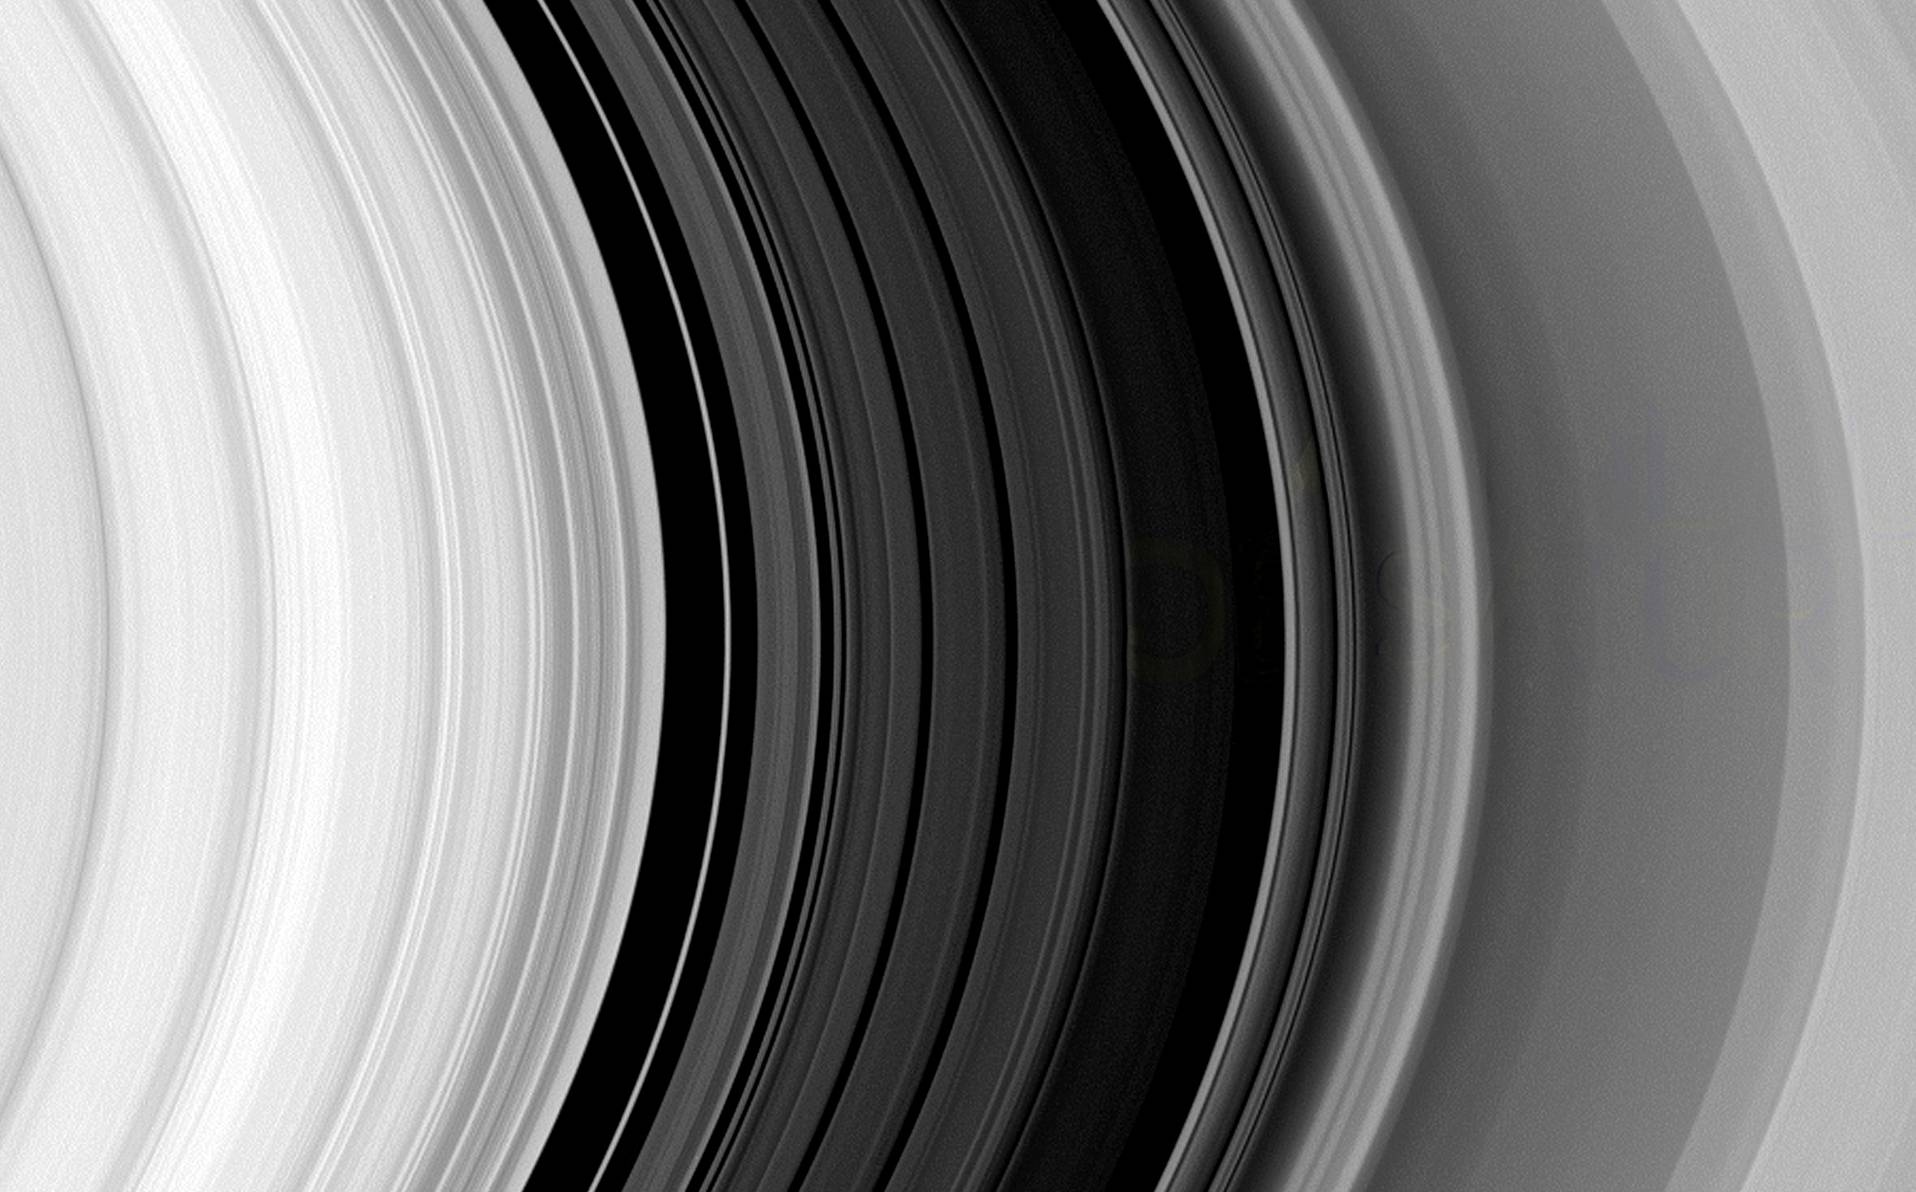 image des anneaux de Saturne